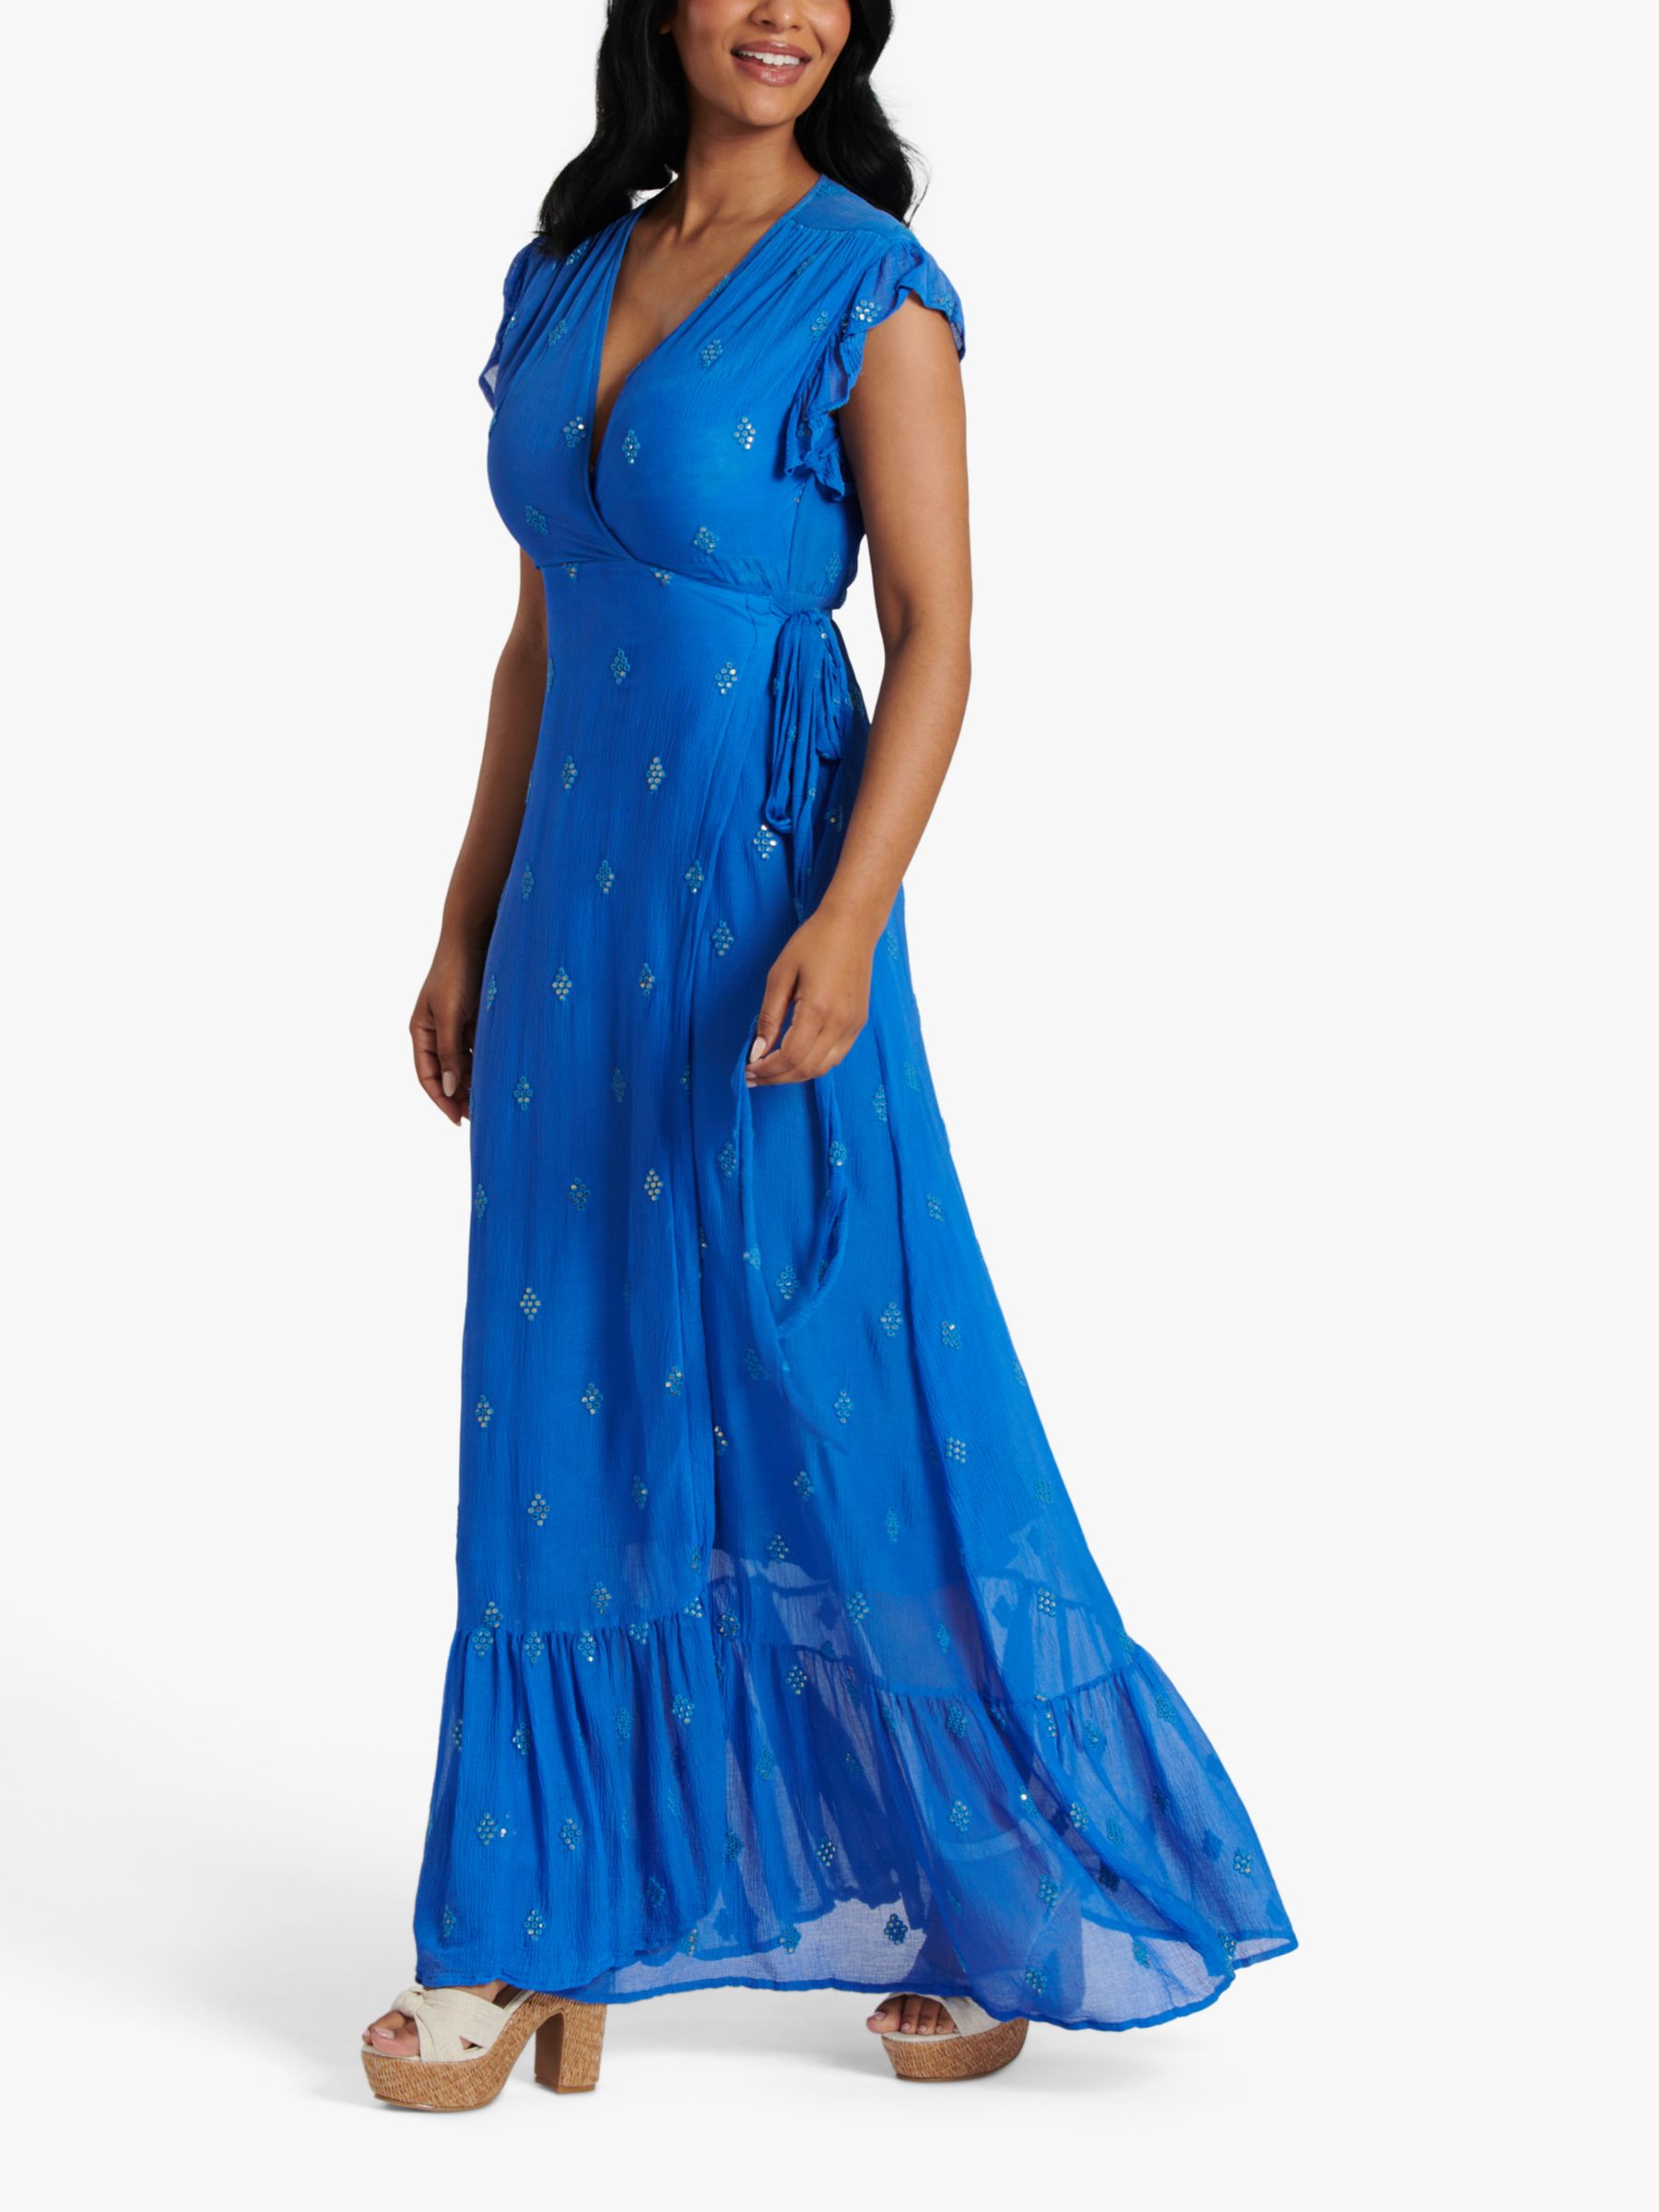 South Beach Sequin Detail Wrap Maxi Dress, Bright Blue, 8